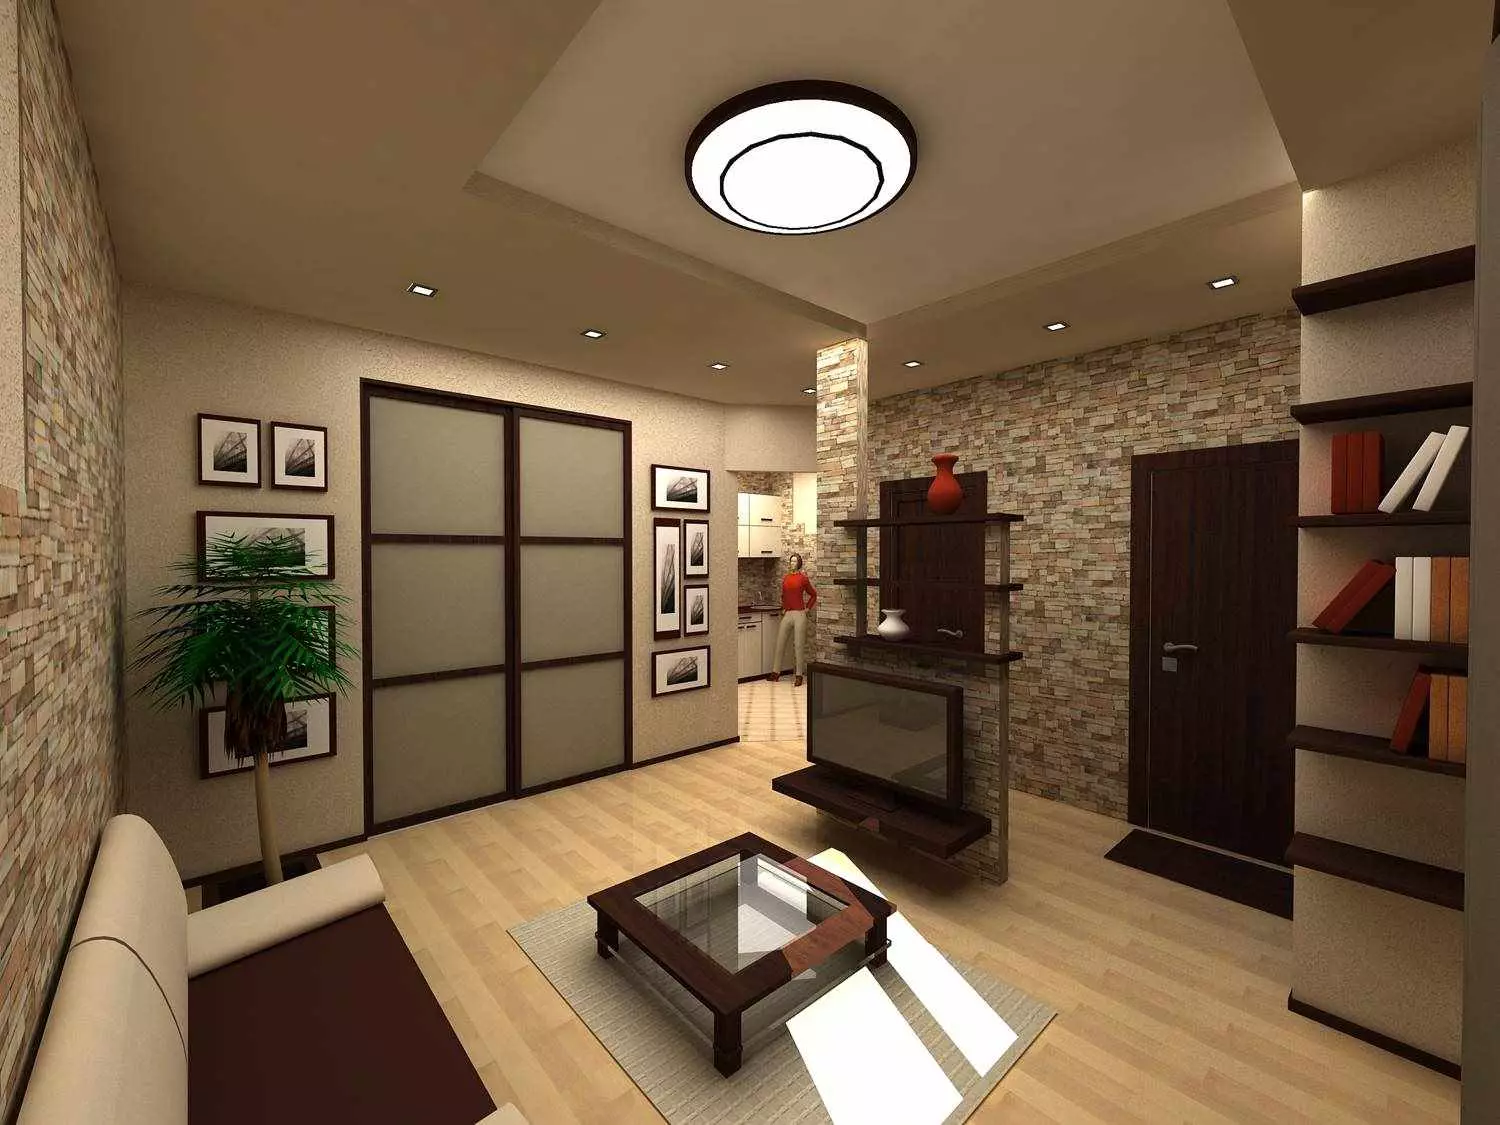 Hallway-obývacia izba (78 fotografií): Design obývacia izba v kombinácii s chodbou v súkromnom dome a byt, usporiadanie haly, v kombinácii s chodbou do jednej izby 9096_16